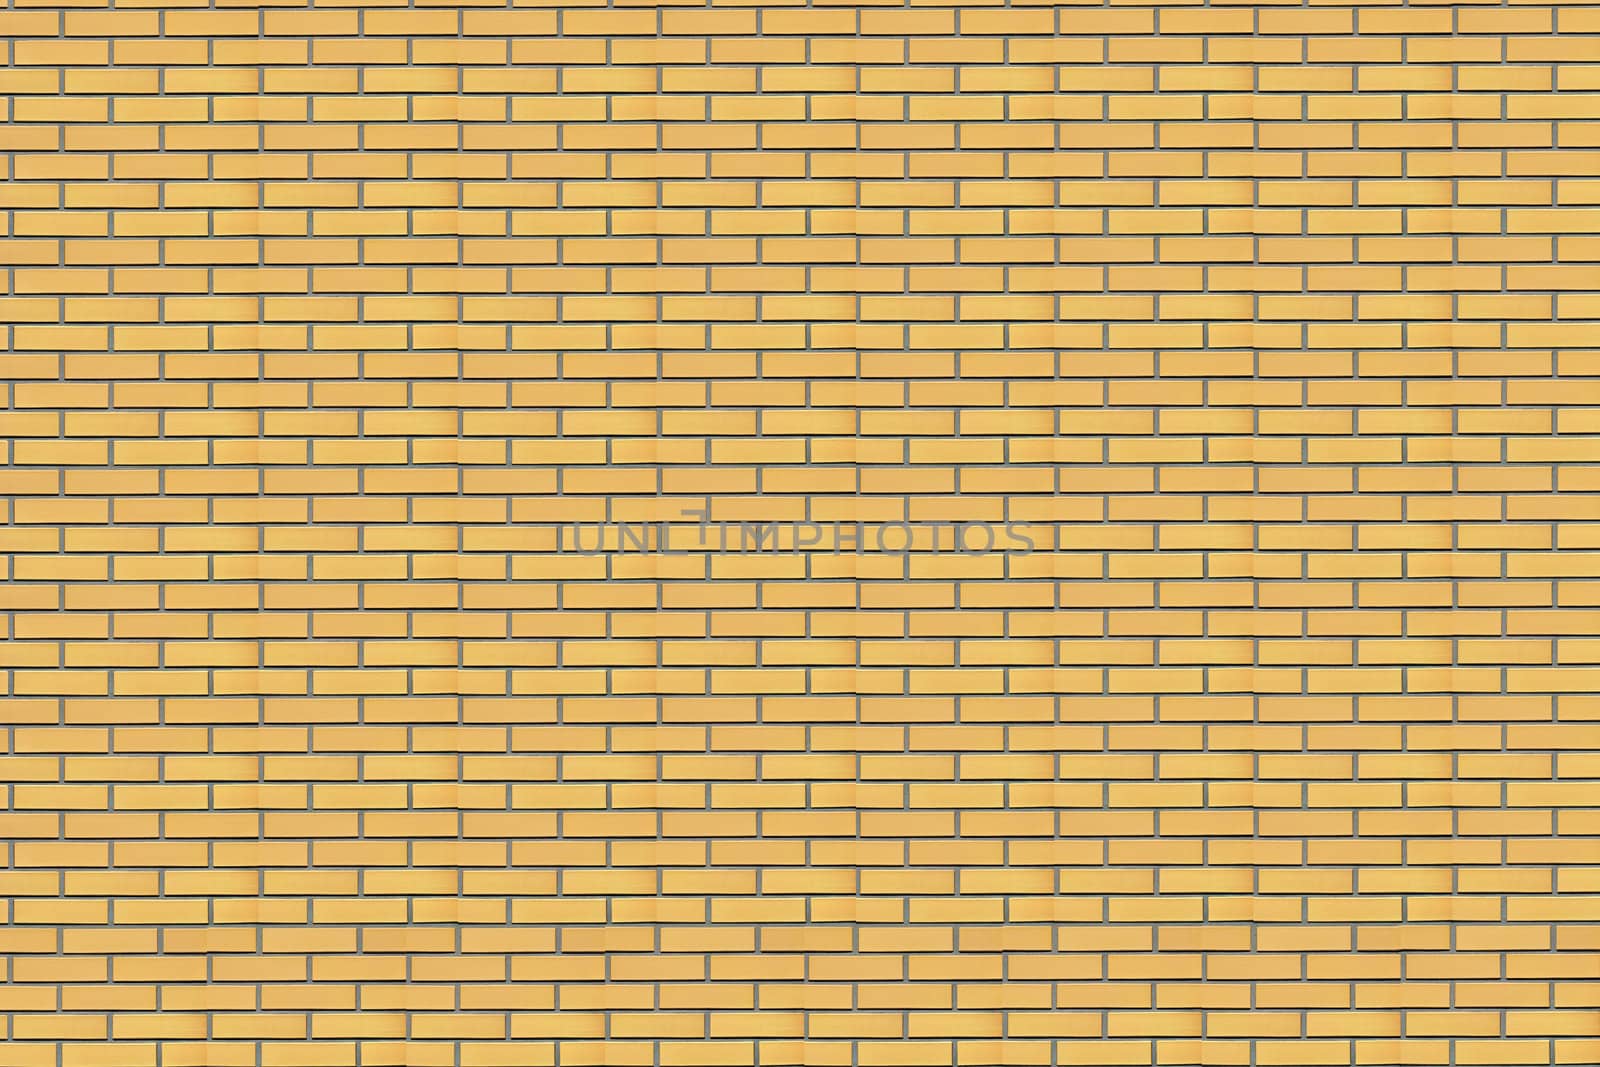 Yellow brick wall by petrkurgan